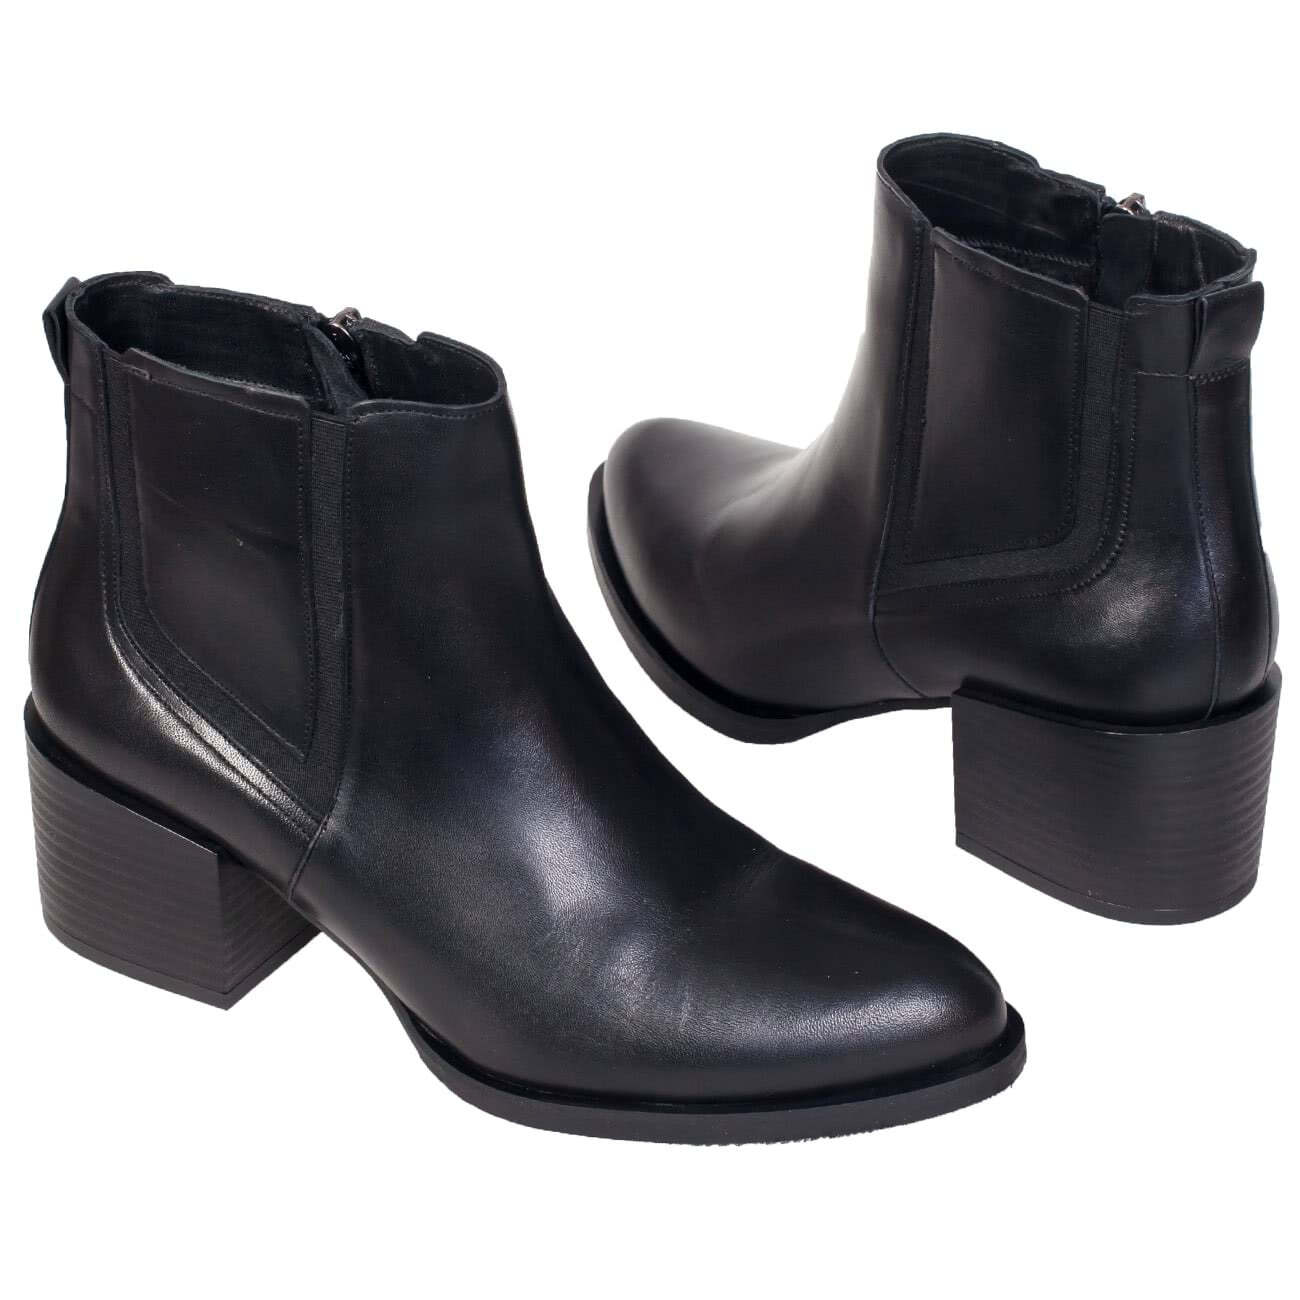 Осенние женские ботинки челси на среднем каблуке 6 см в интернет магазинеKwinto